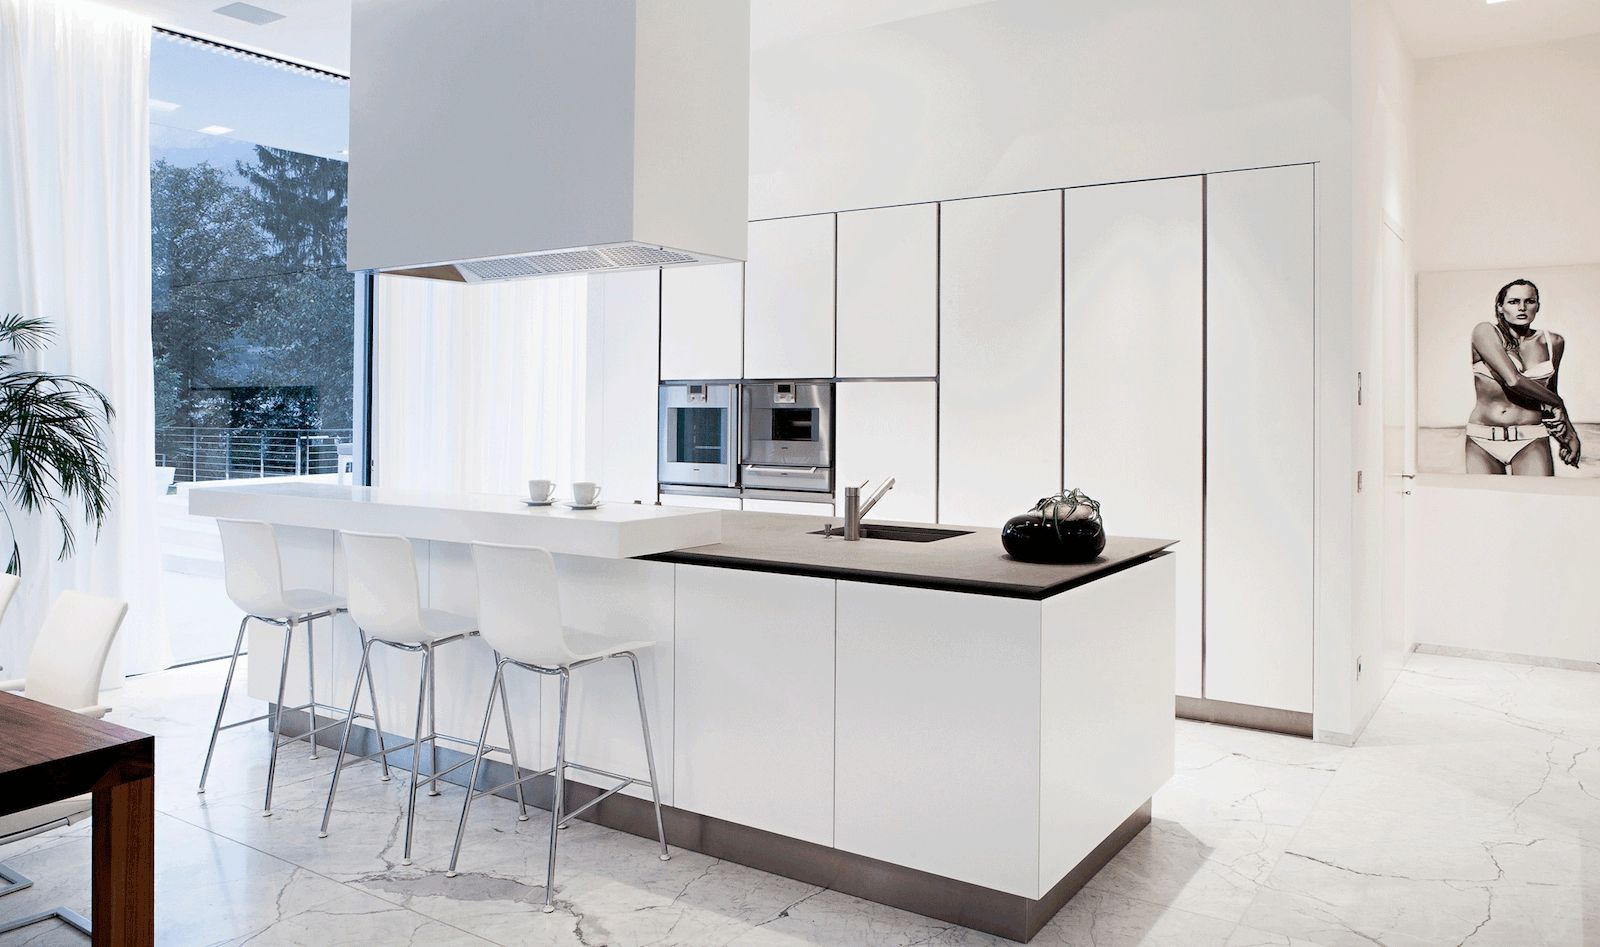 Casa M, monovolume architecture + design monovolume architecture + design Modern kitchen